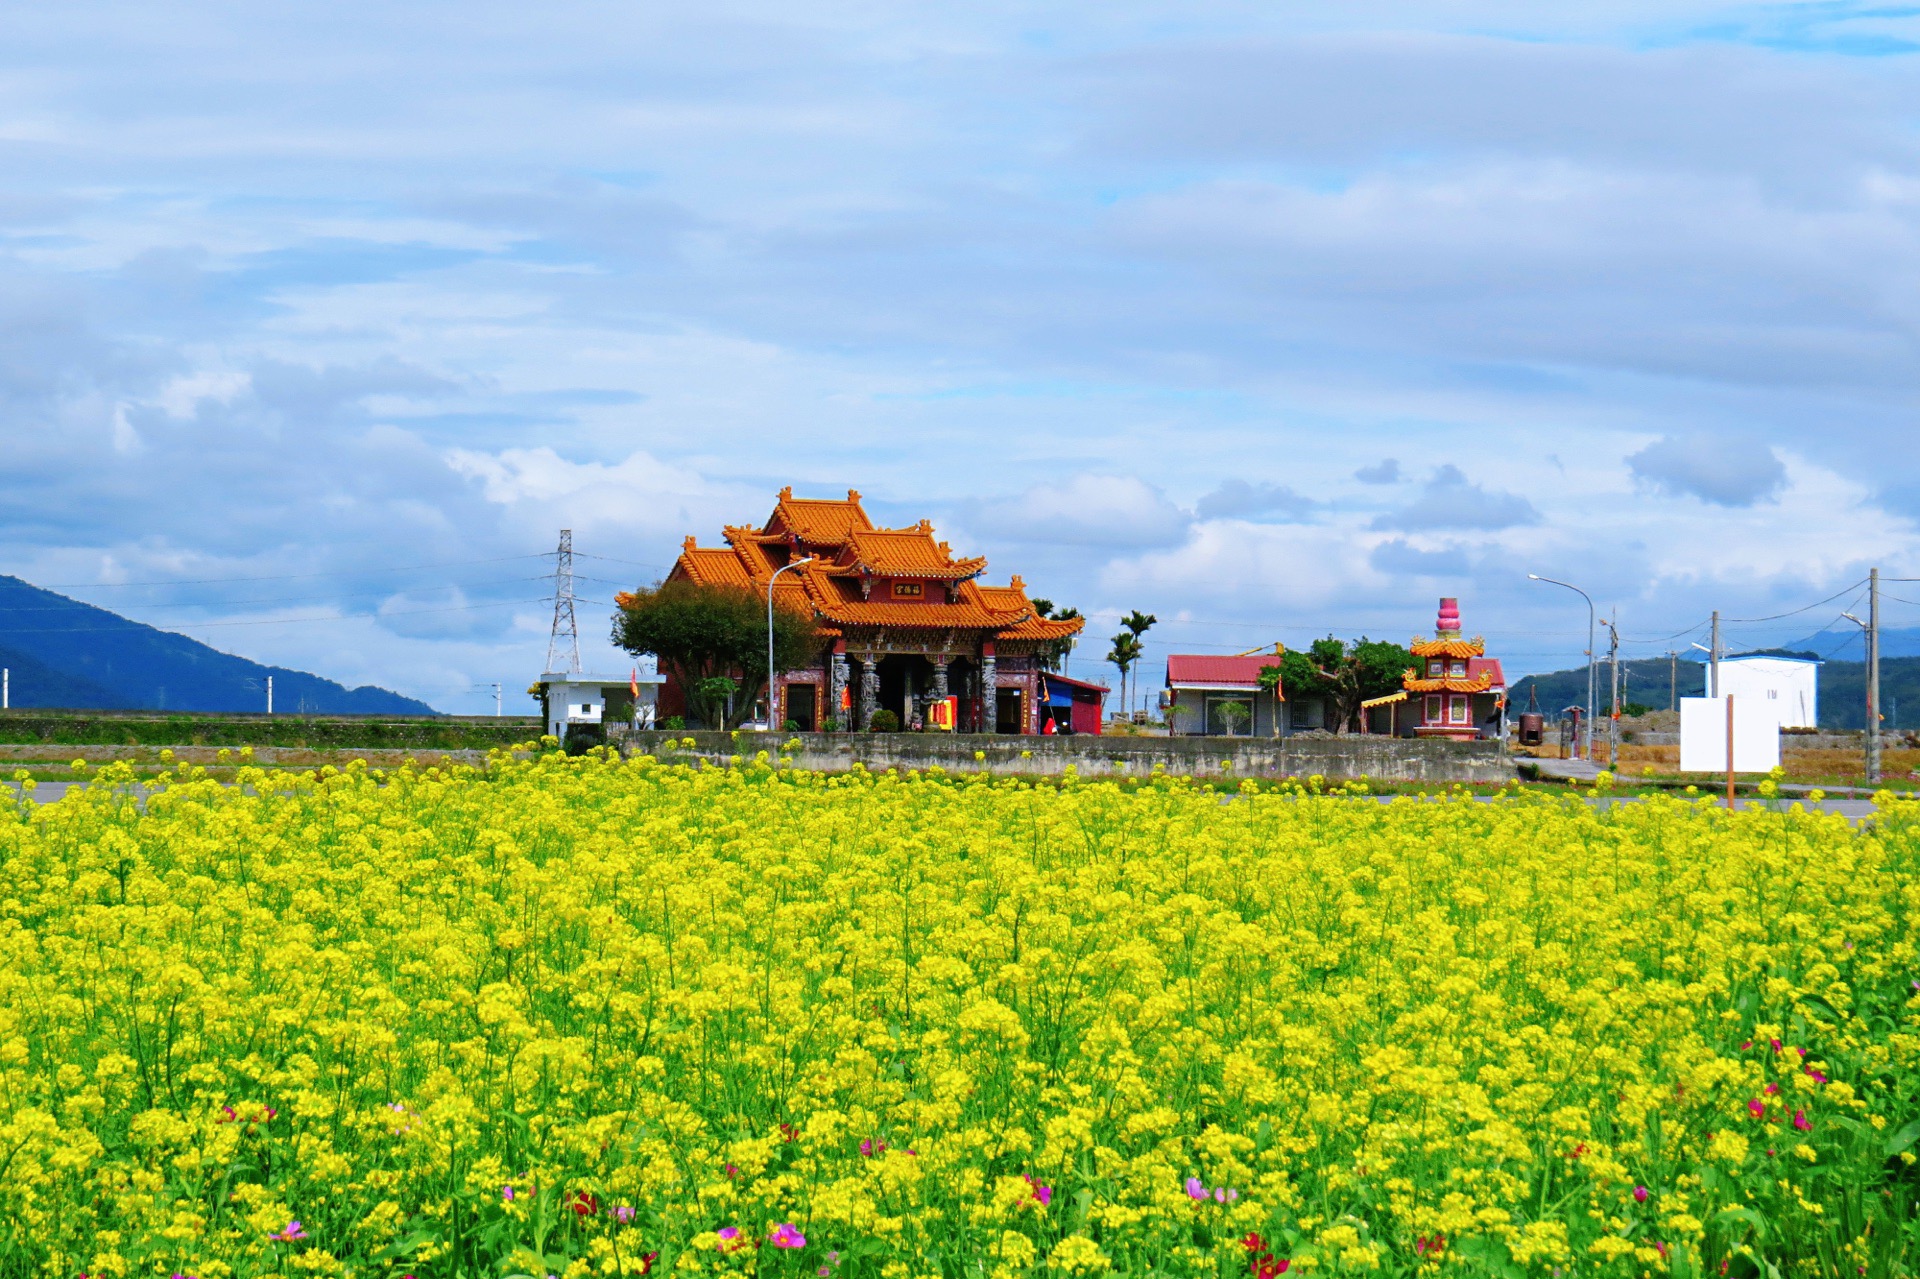 【携程攻略】台东池上乡景点, 台湾台东县池上乡1000多公顷的油菜花